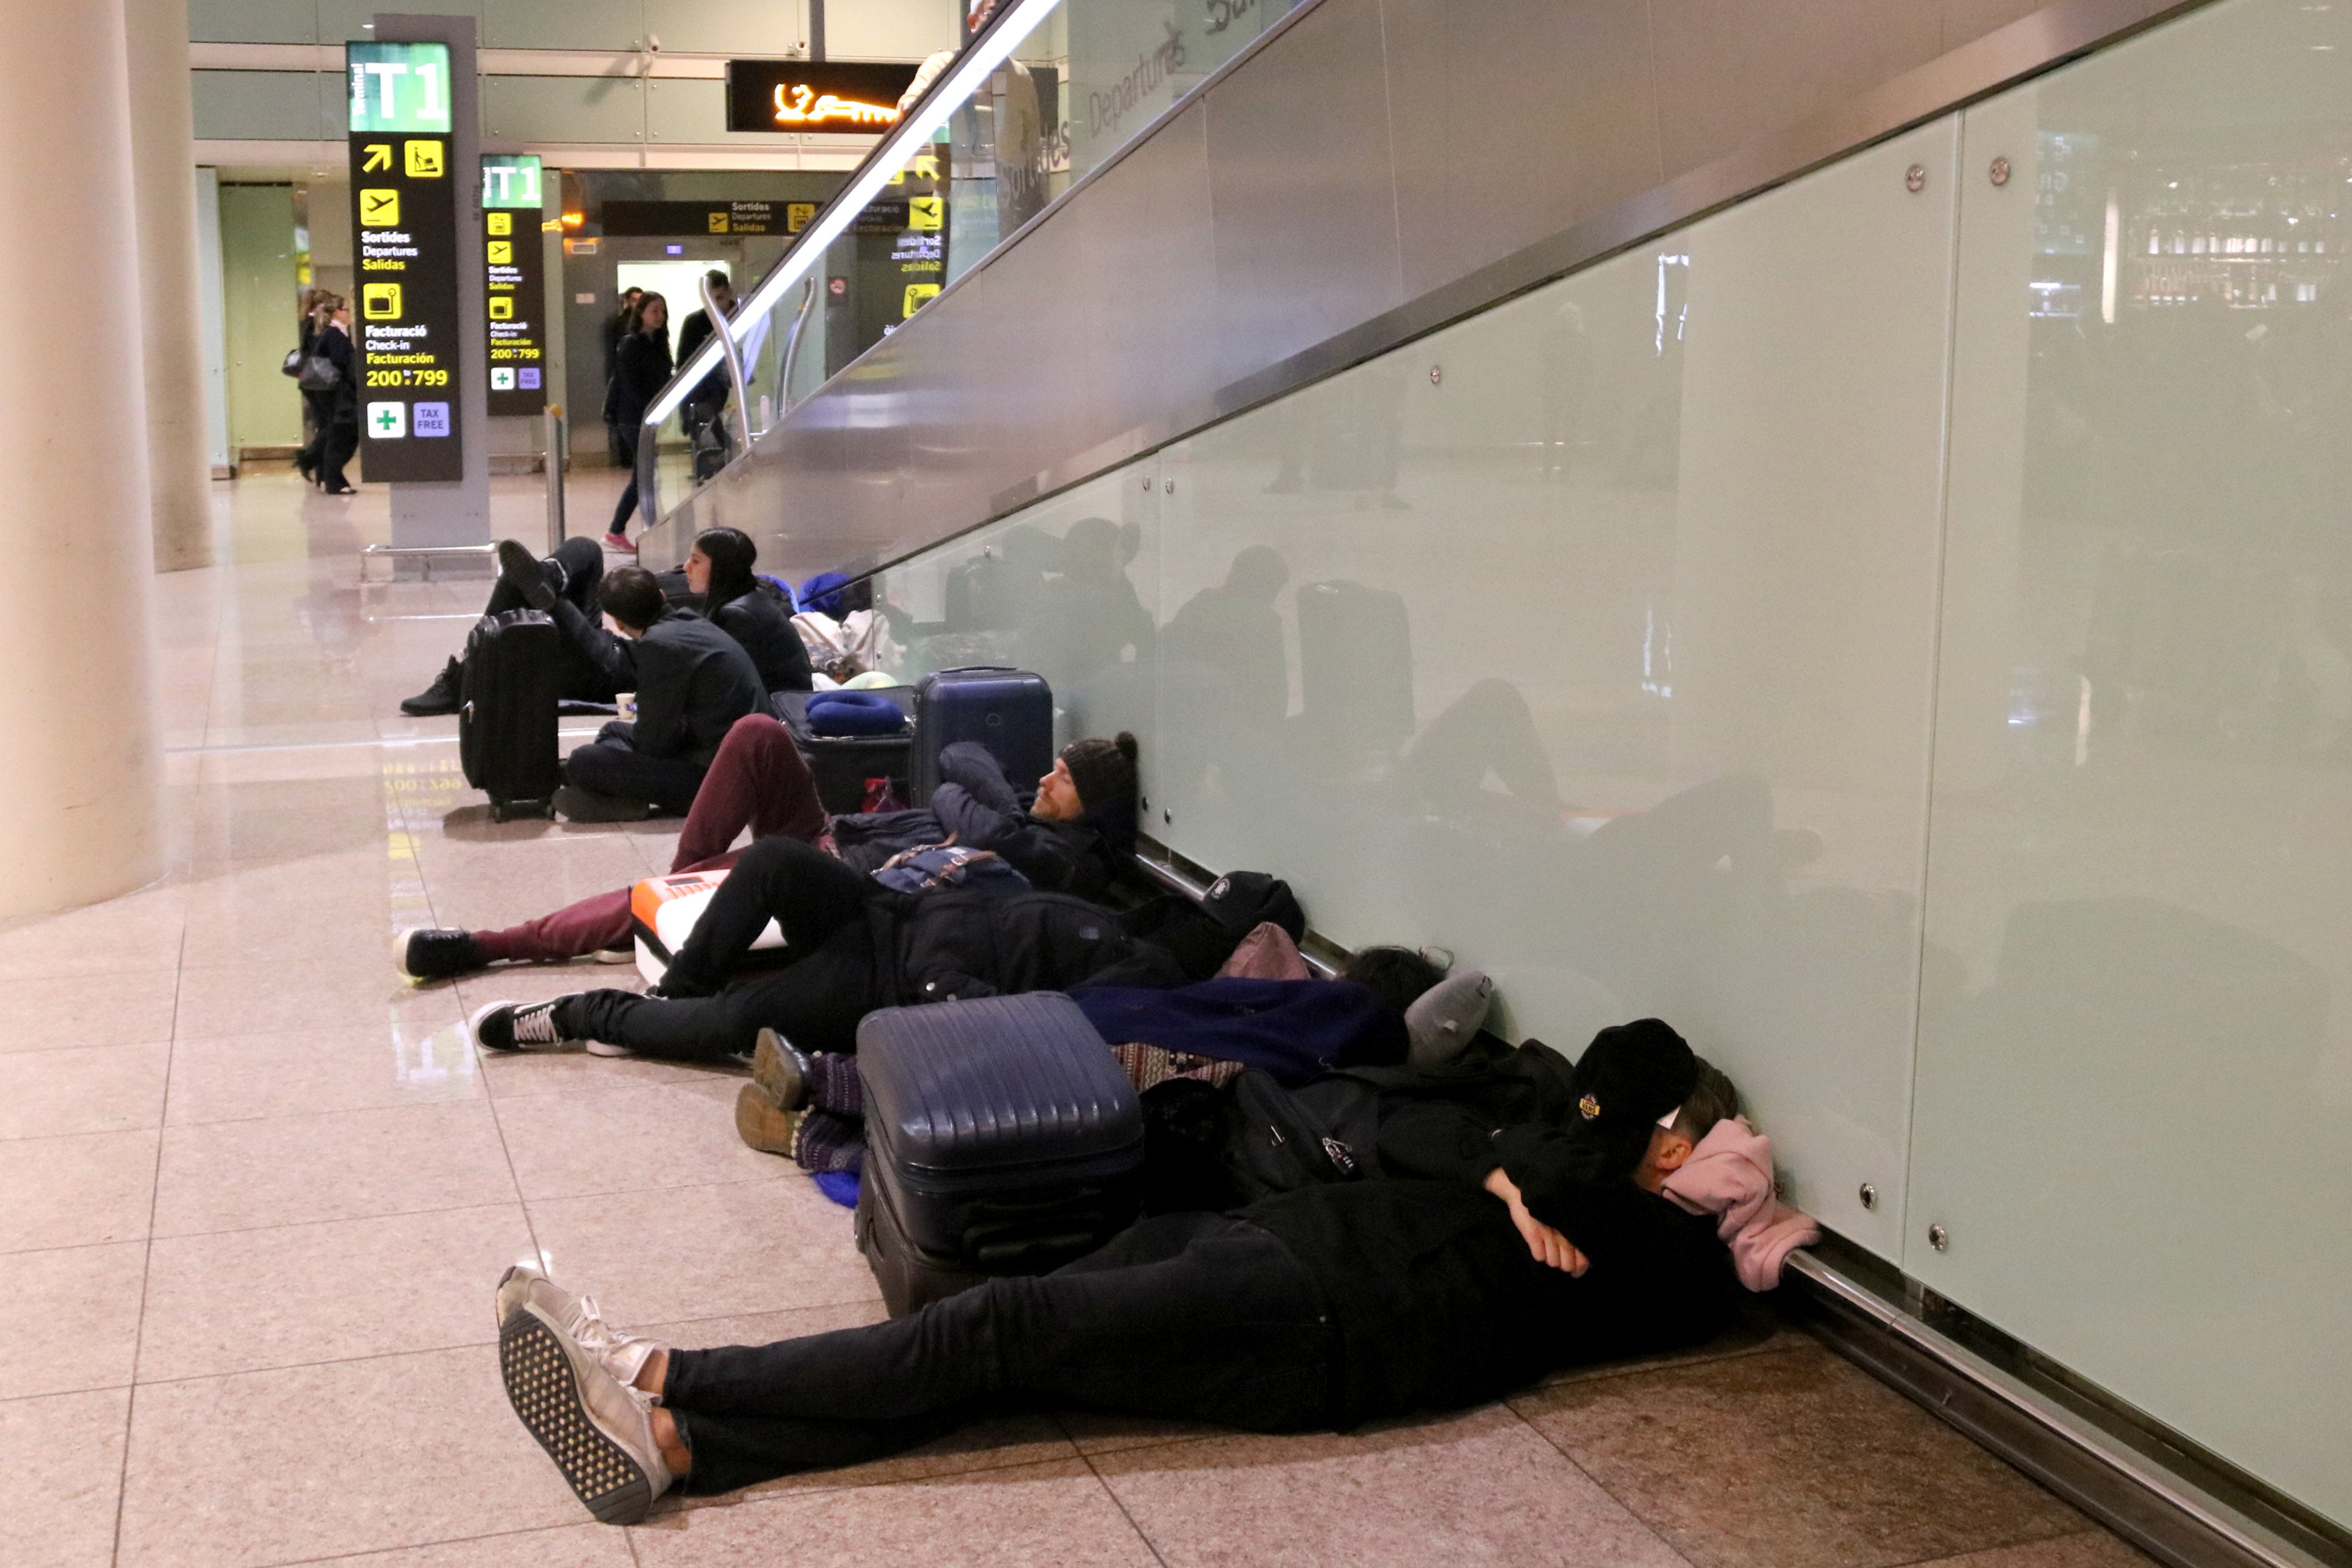 Centenars de viatgers passen la nit a l'aeroport per por de perdre el vol